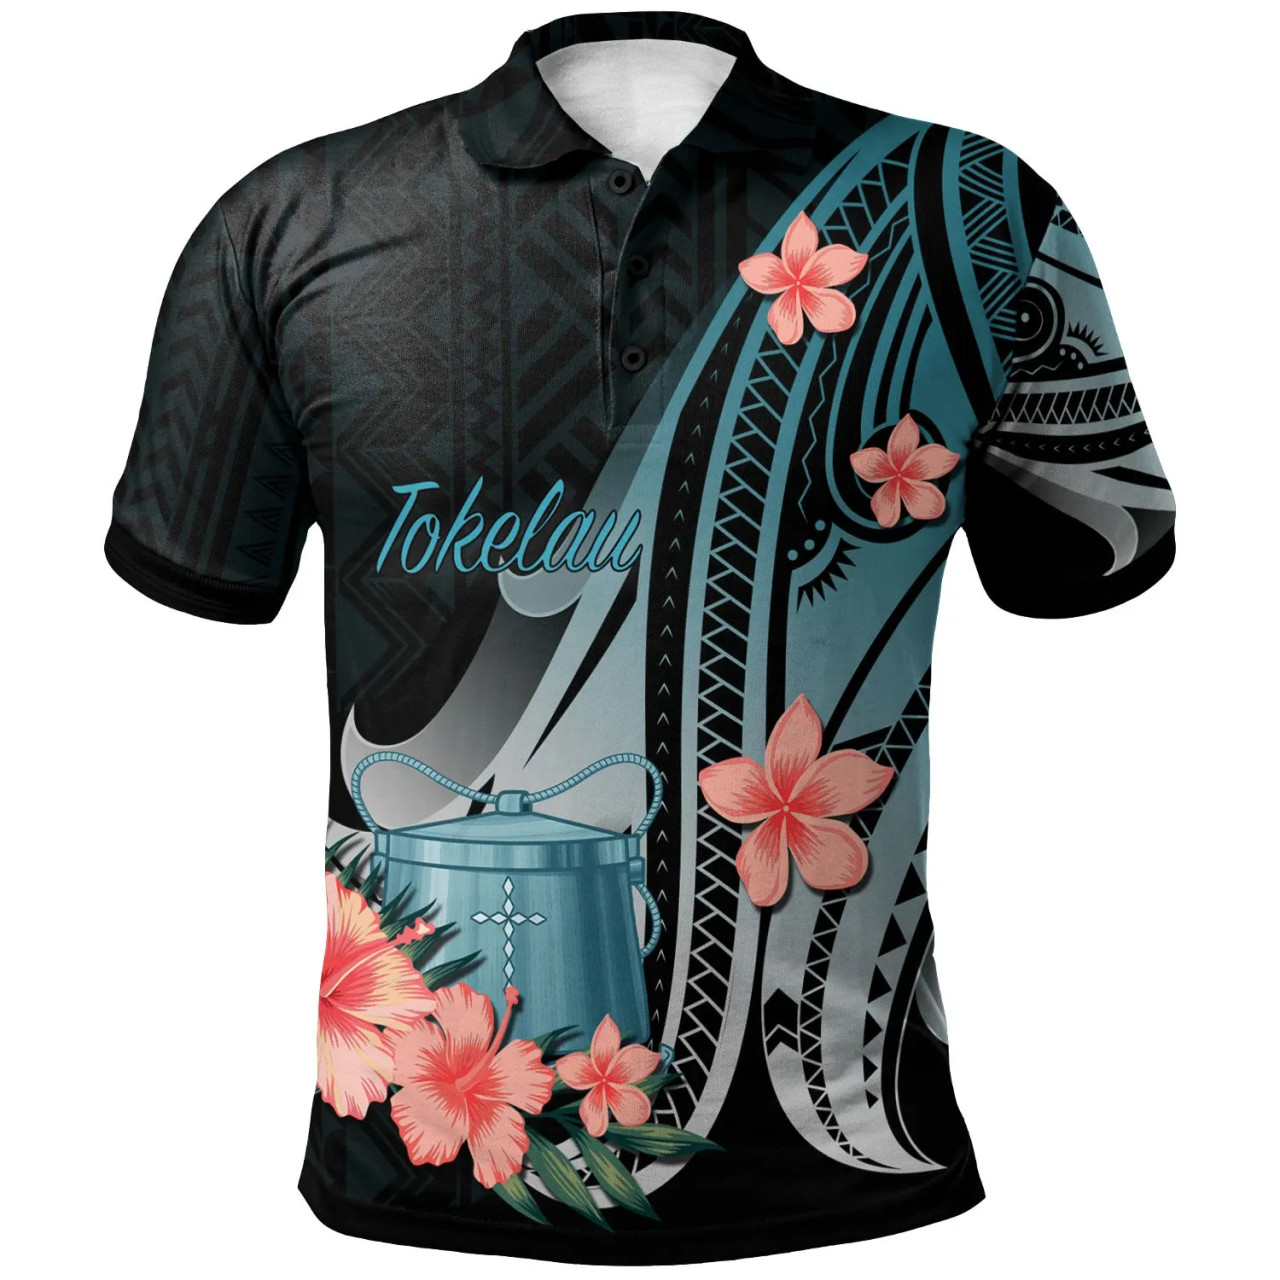 Tokelau Polo Shirt - Turquoise Polynesian Hibiscus Pattern Style 1